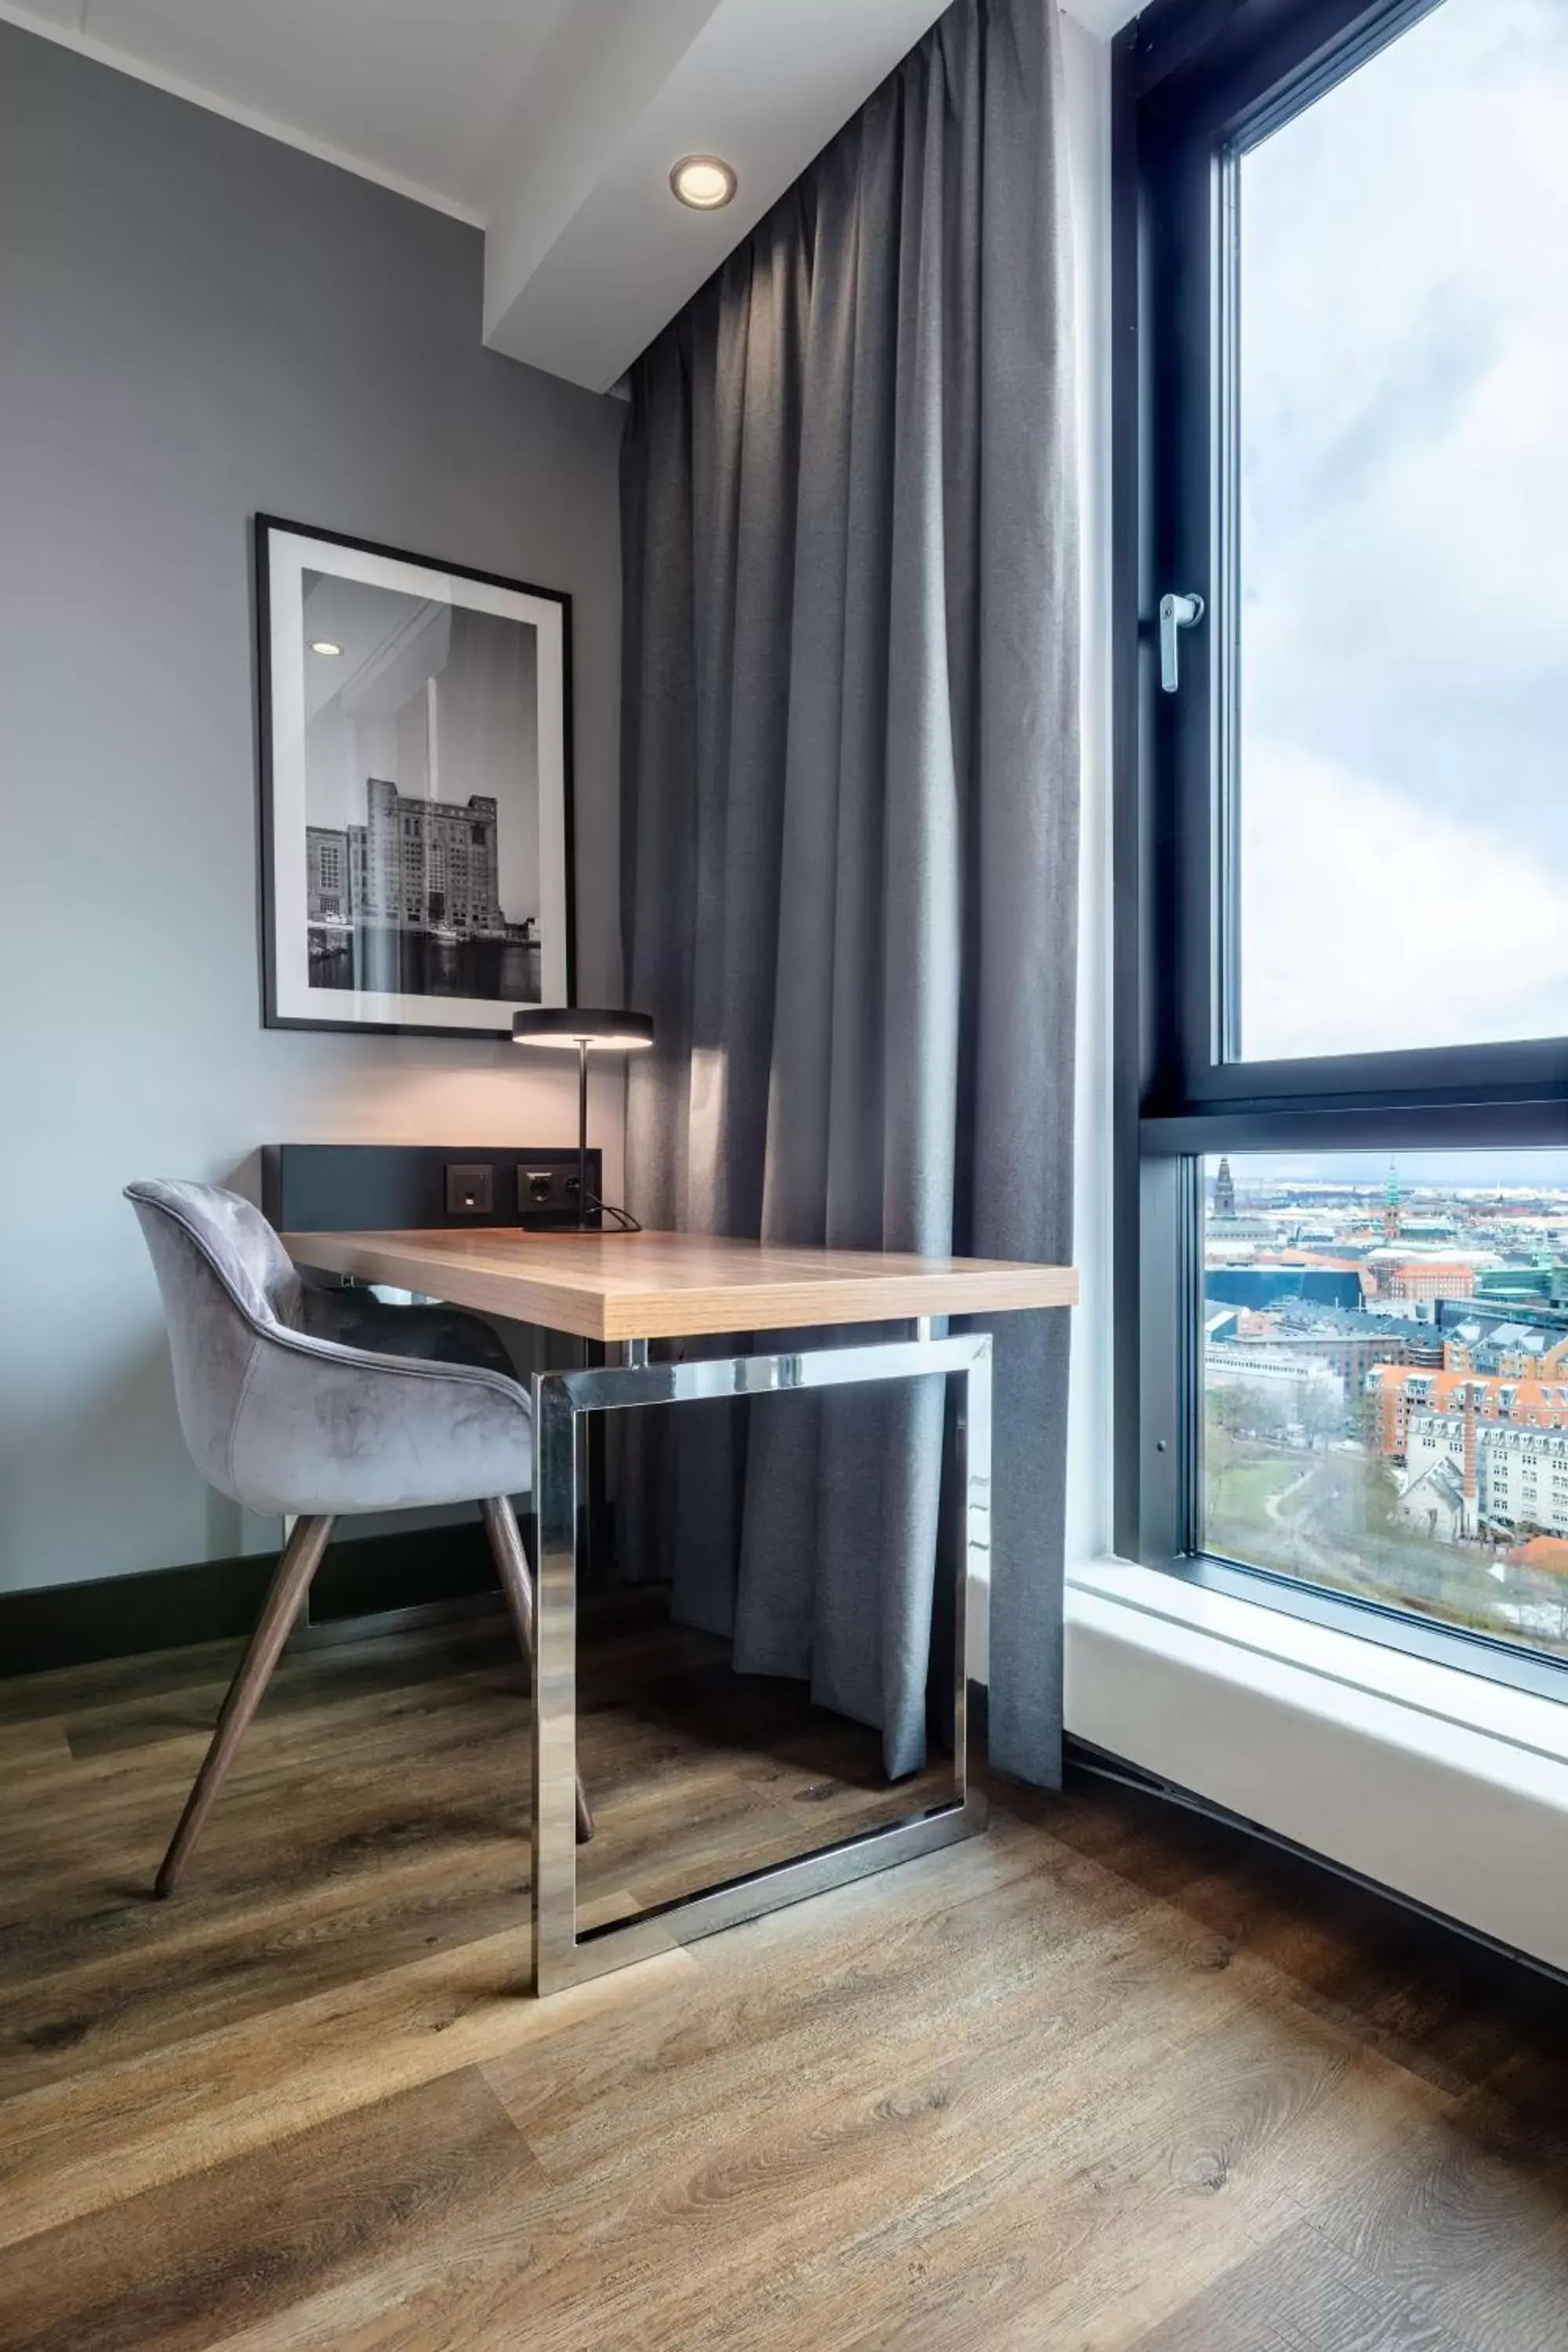 Bedroom in Radisson Blu Scandinavia Hotel, Copenhagen